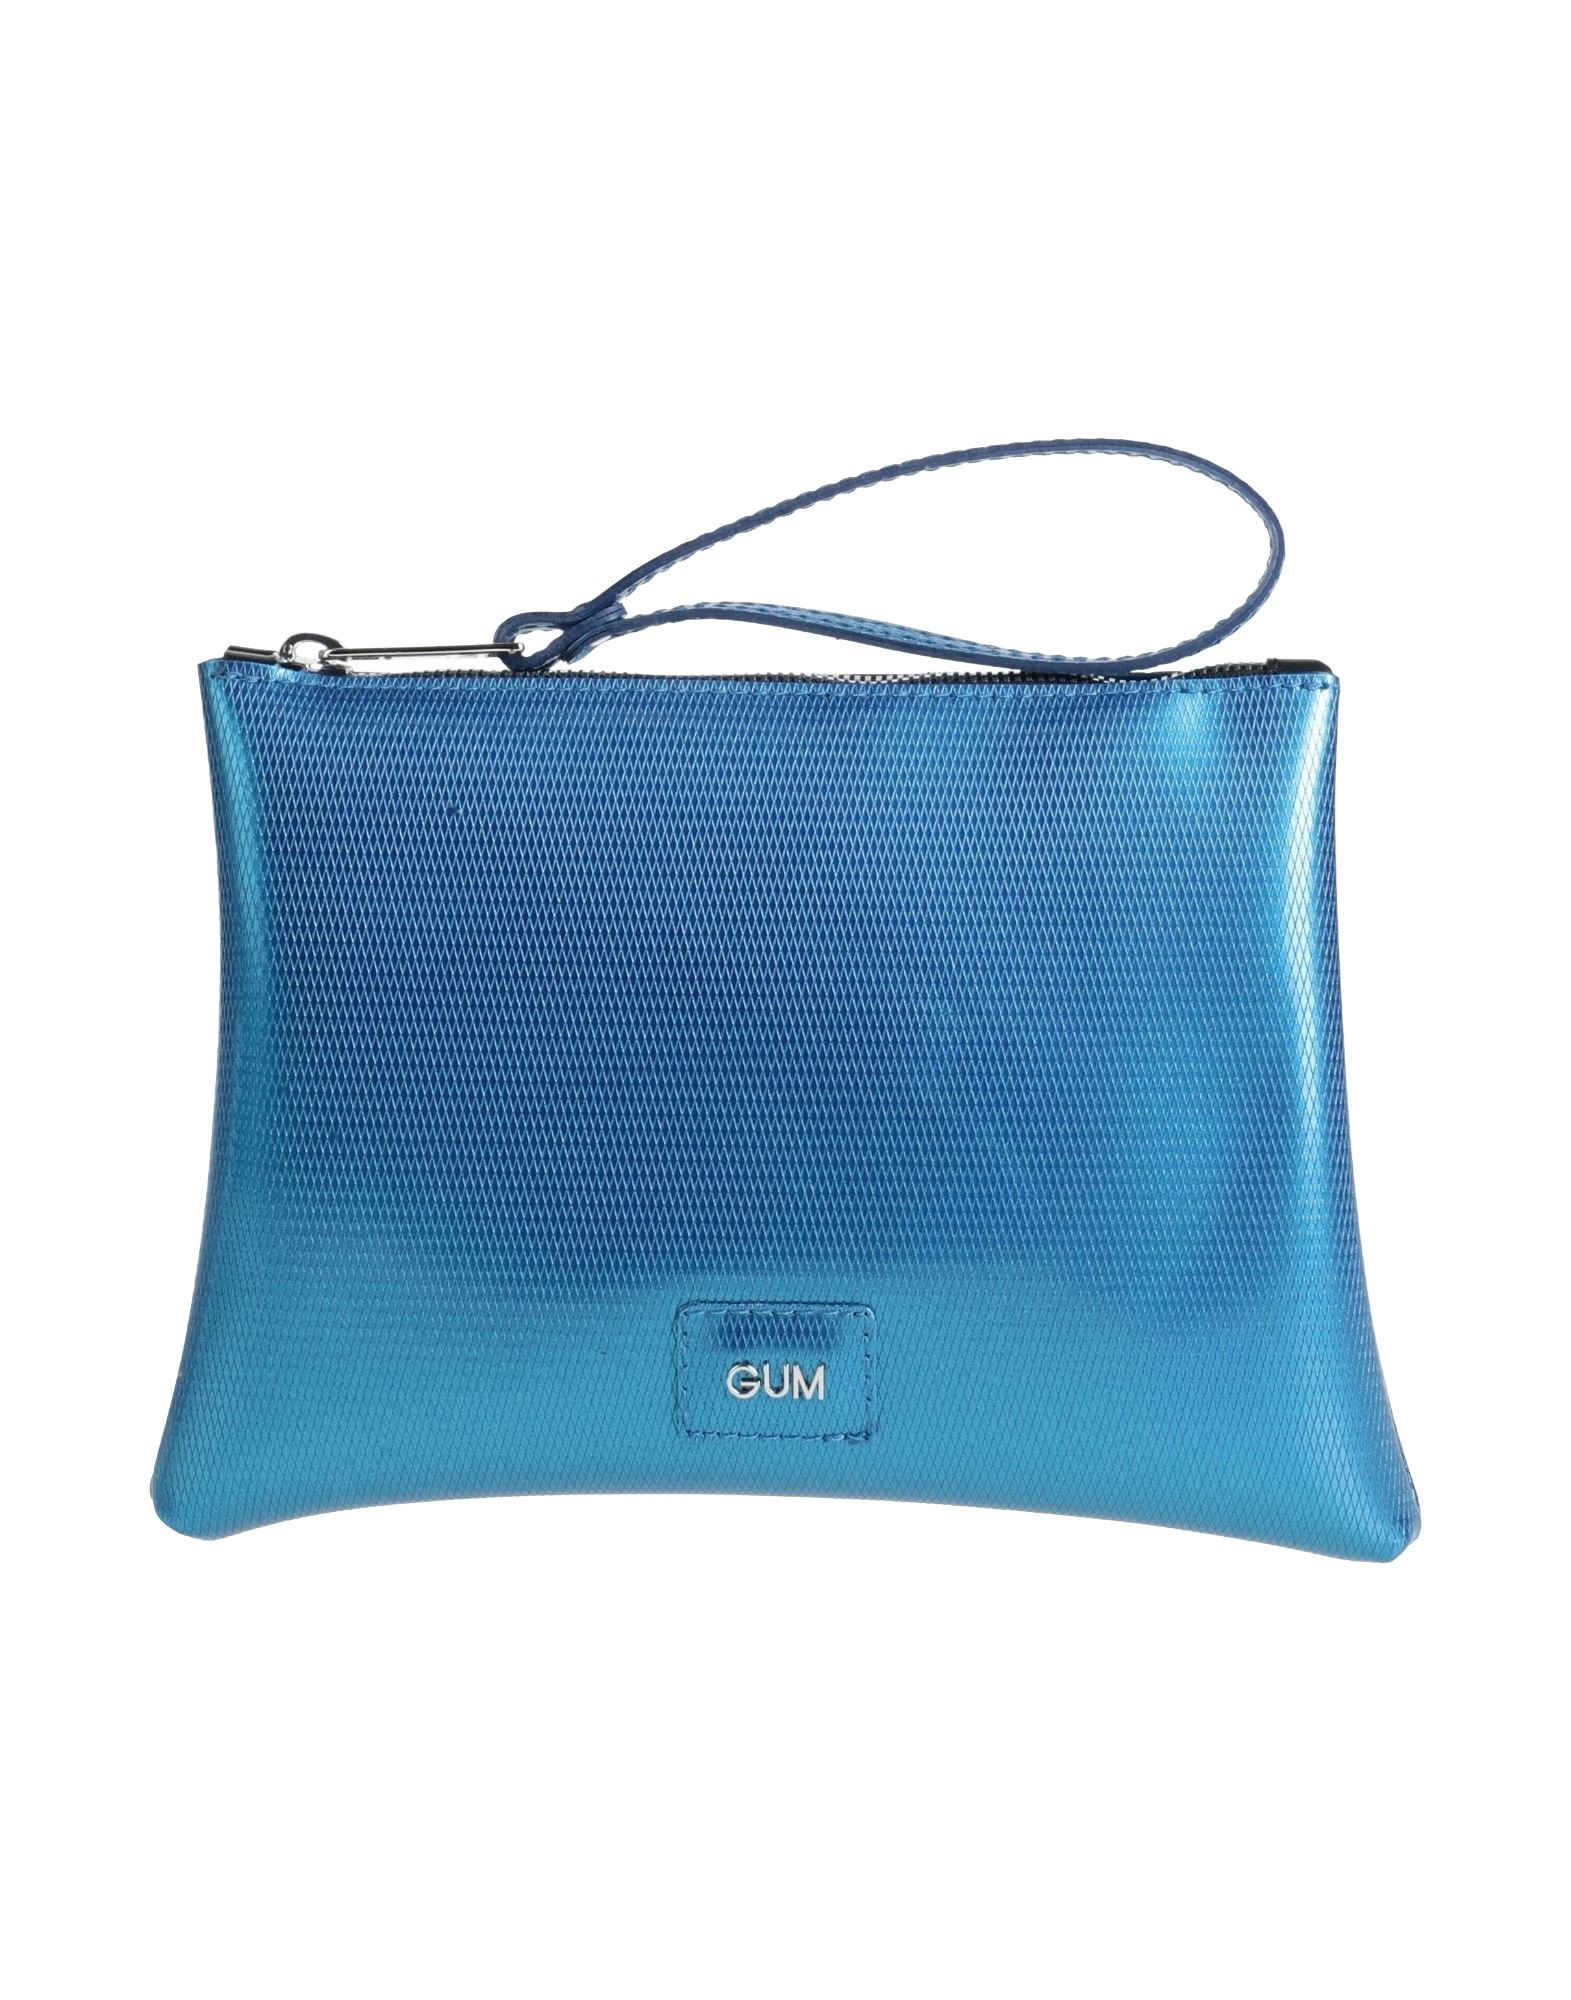 Gum Design Handbags In Azure